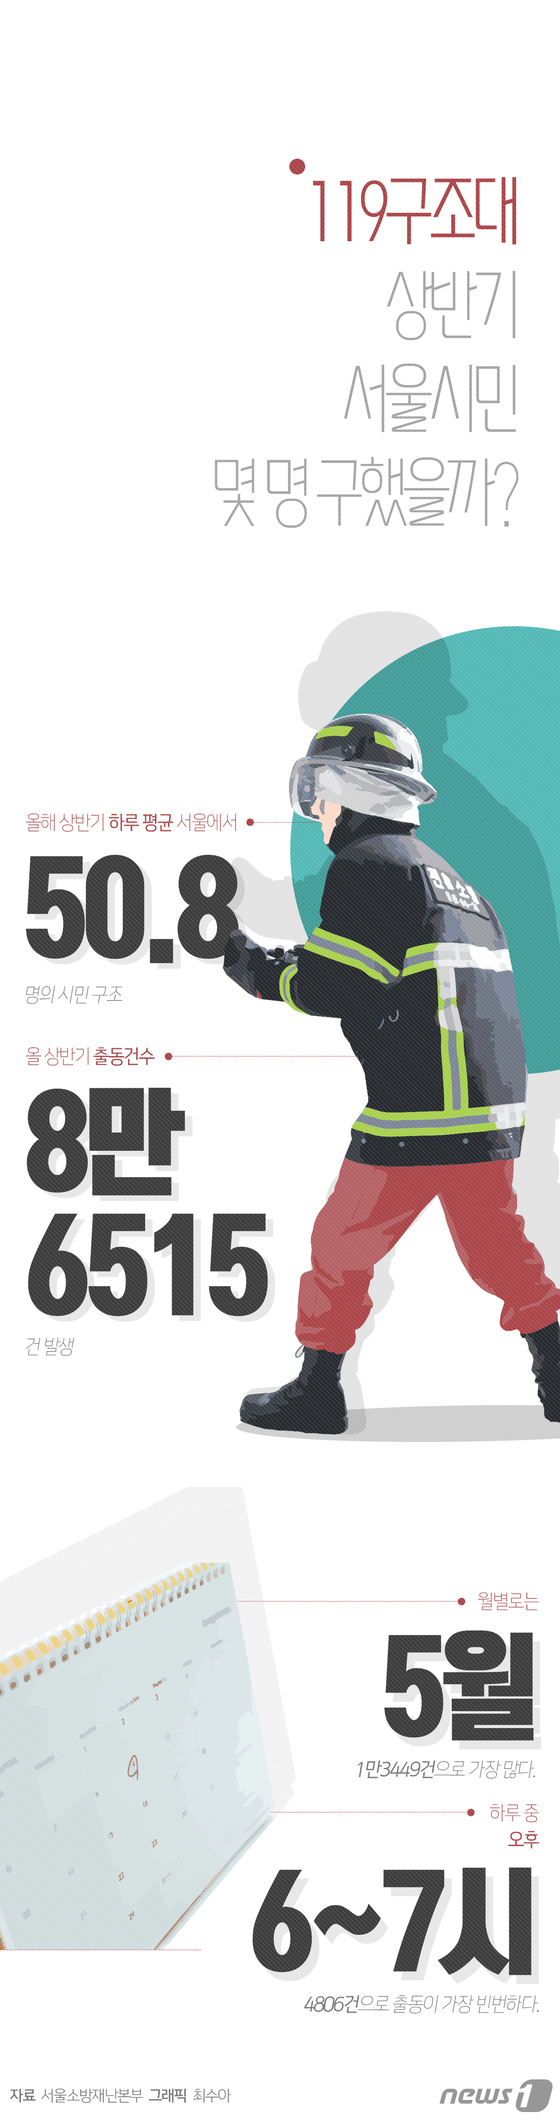 [그래픽뉴스] 119구조대, 상반기 서울시민 몇 명 구했을까?